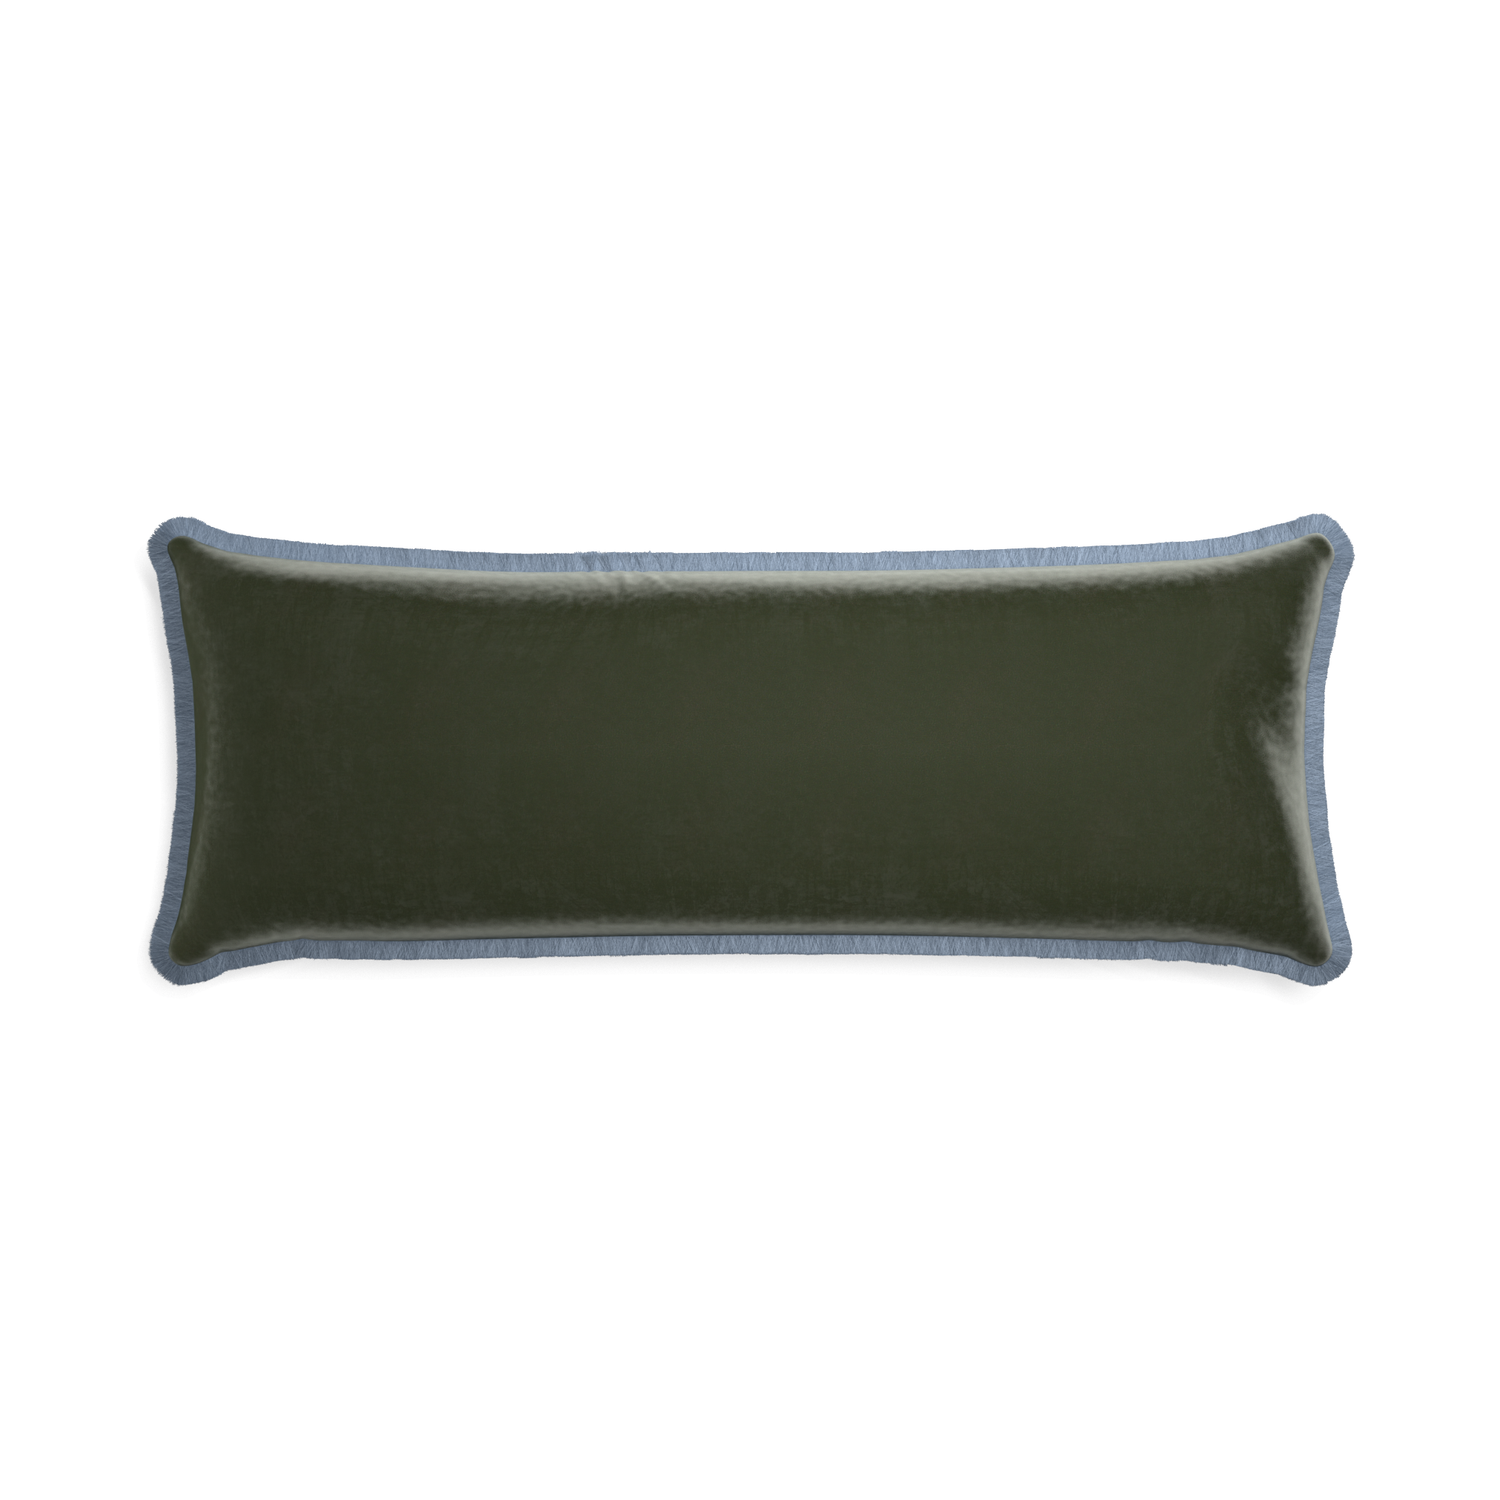 Xl-lumbar fern velvet custom pillow with sky fringe on white background